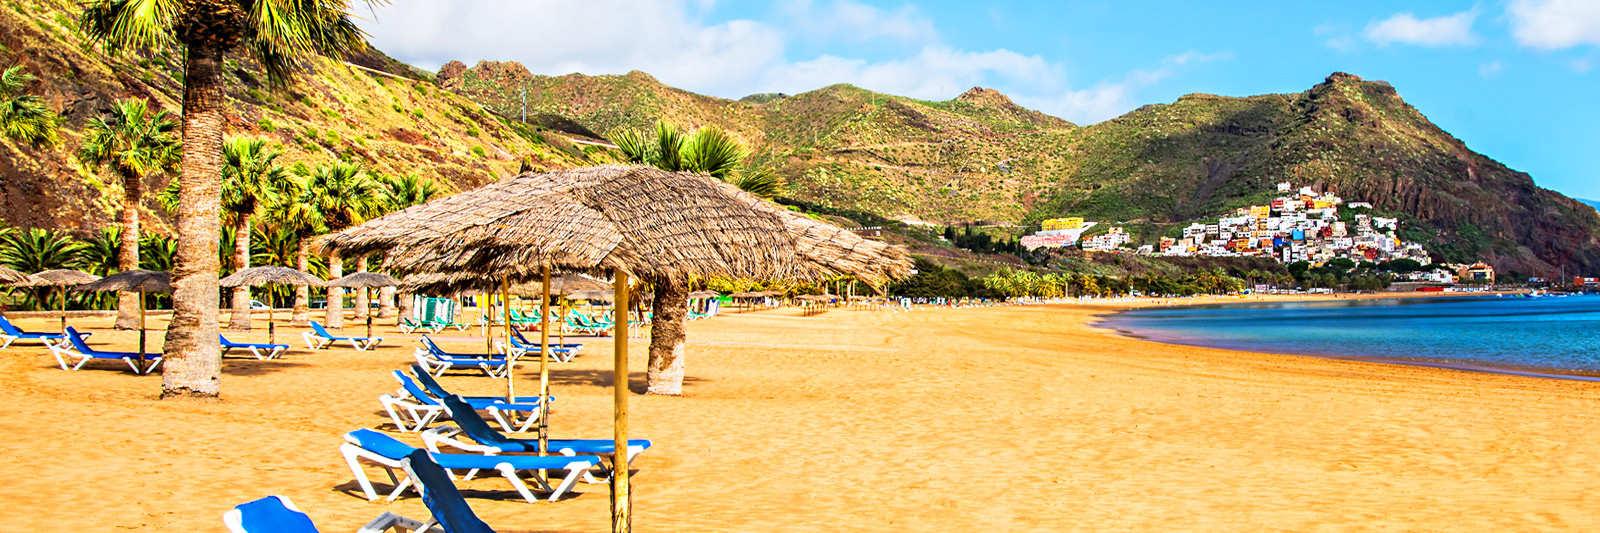 Poolurlaub auf Lanzarote - 29 Ferienwohnungen und Ferienhäuser mit Pool - tourist-online.de